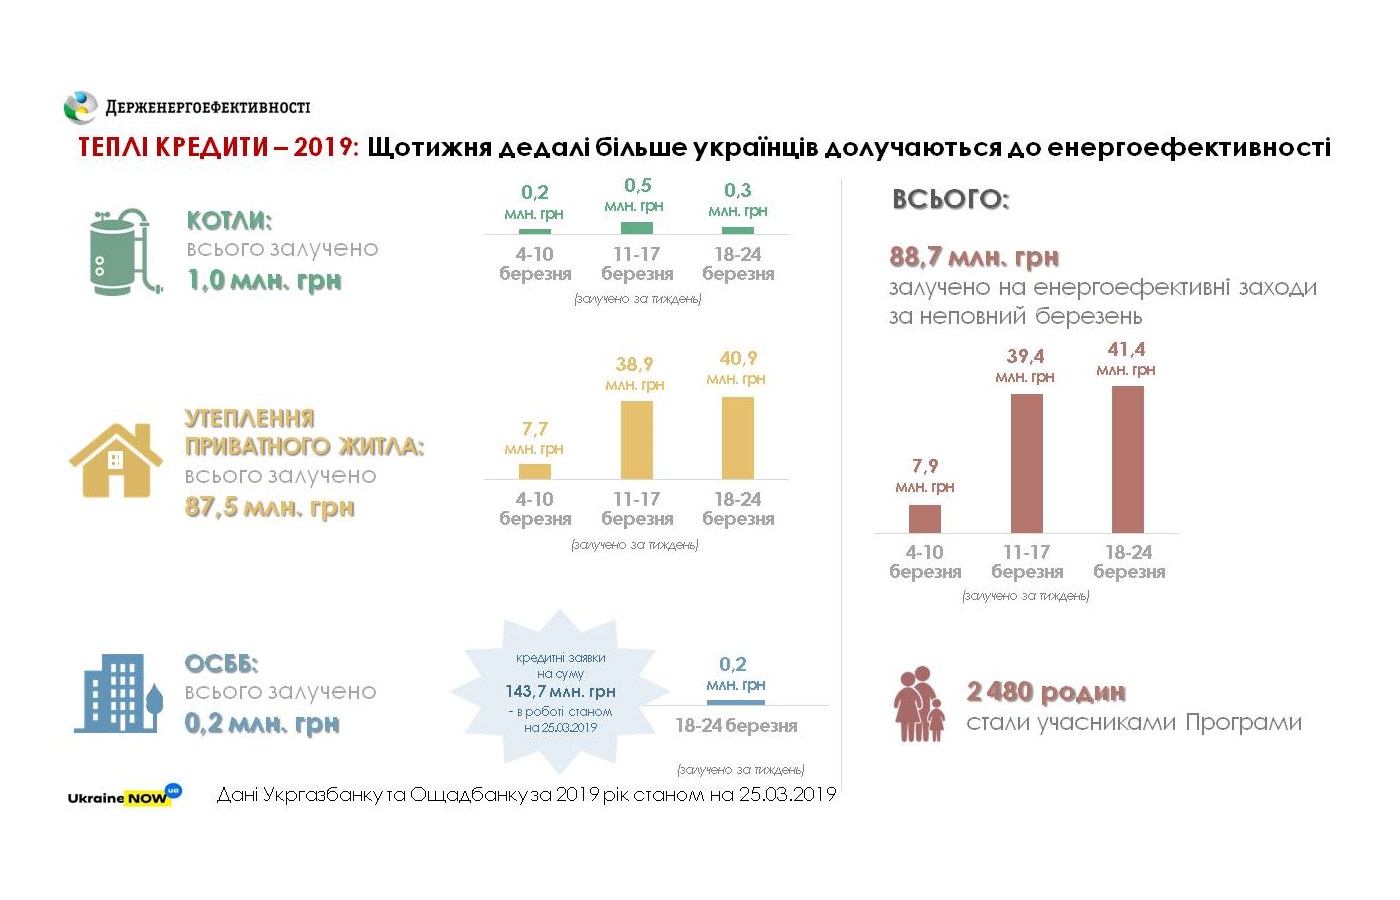 «Теплі кредити» для всіх охочих: вже близько 2500 сімей залучили 90 млн грн на енергоефективні заходи в Укргазбанку та Ощадбанку